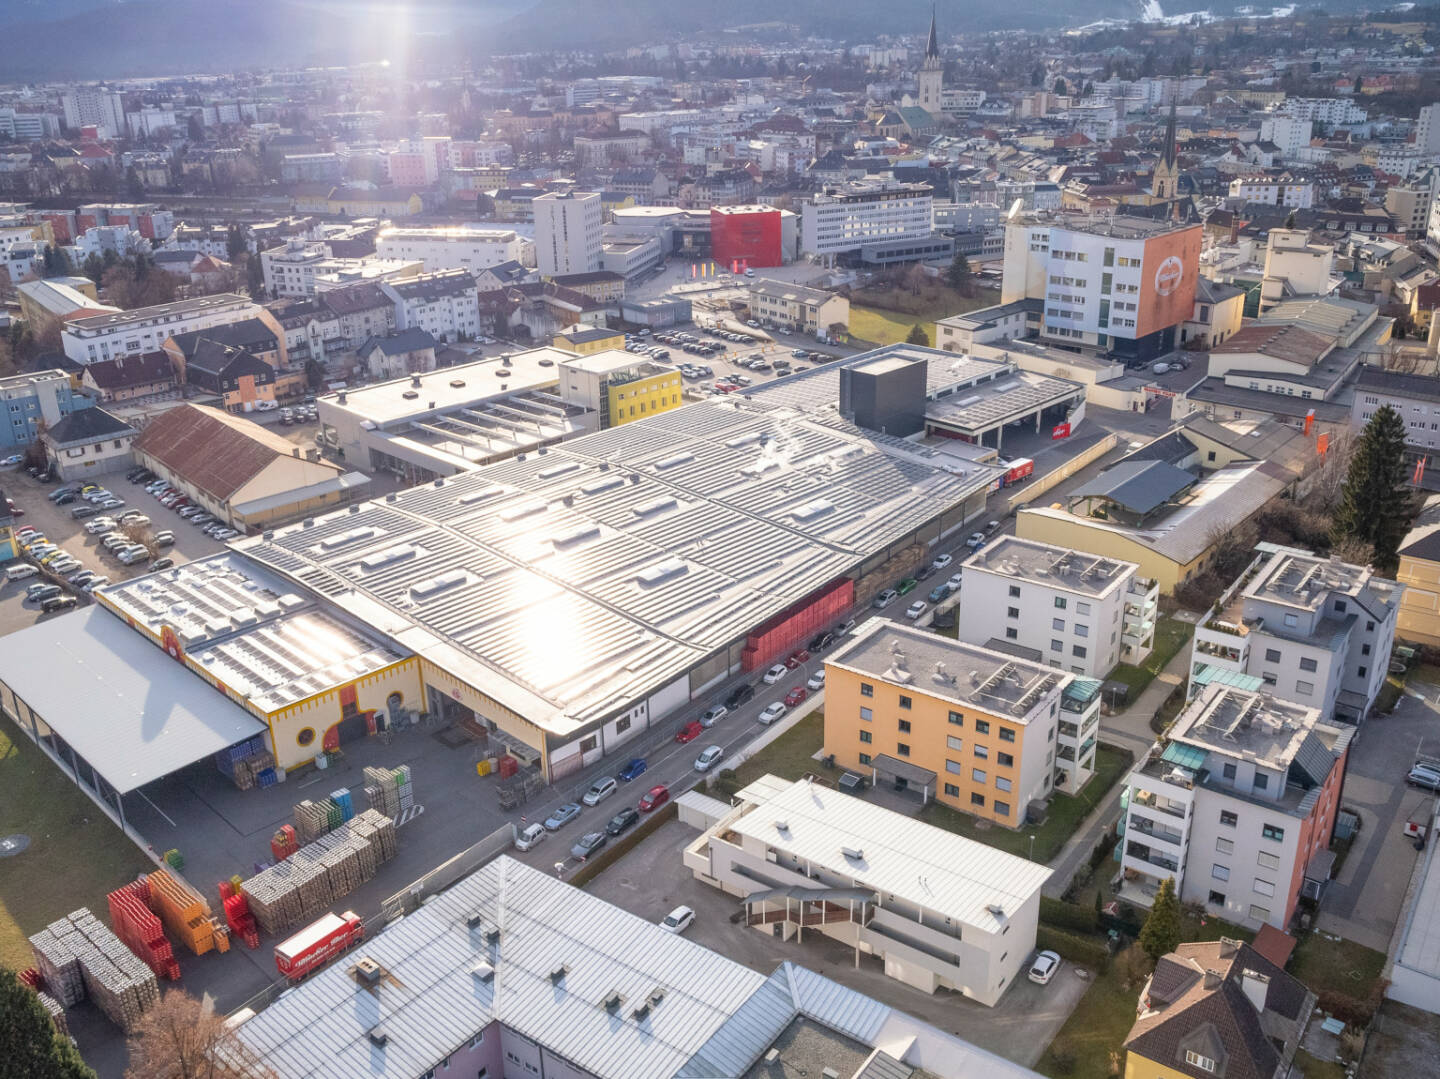 Brau Union Österreich AG: Bestes Bier wird von der Sonne gebraut, mit ihrer Photovoltaikanlage zählt die Villacher Brauerei zu den Top 8 Solar-Brauereien der Welt. Fotocredit: Brau Union Österreich